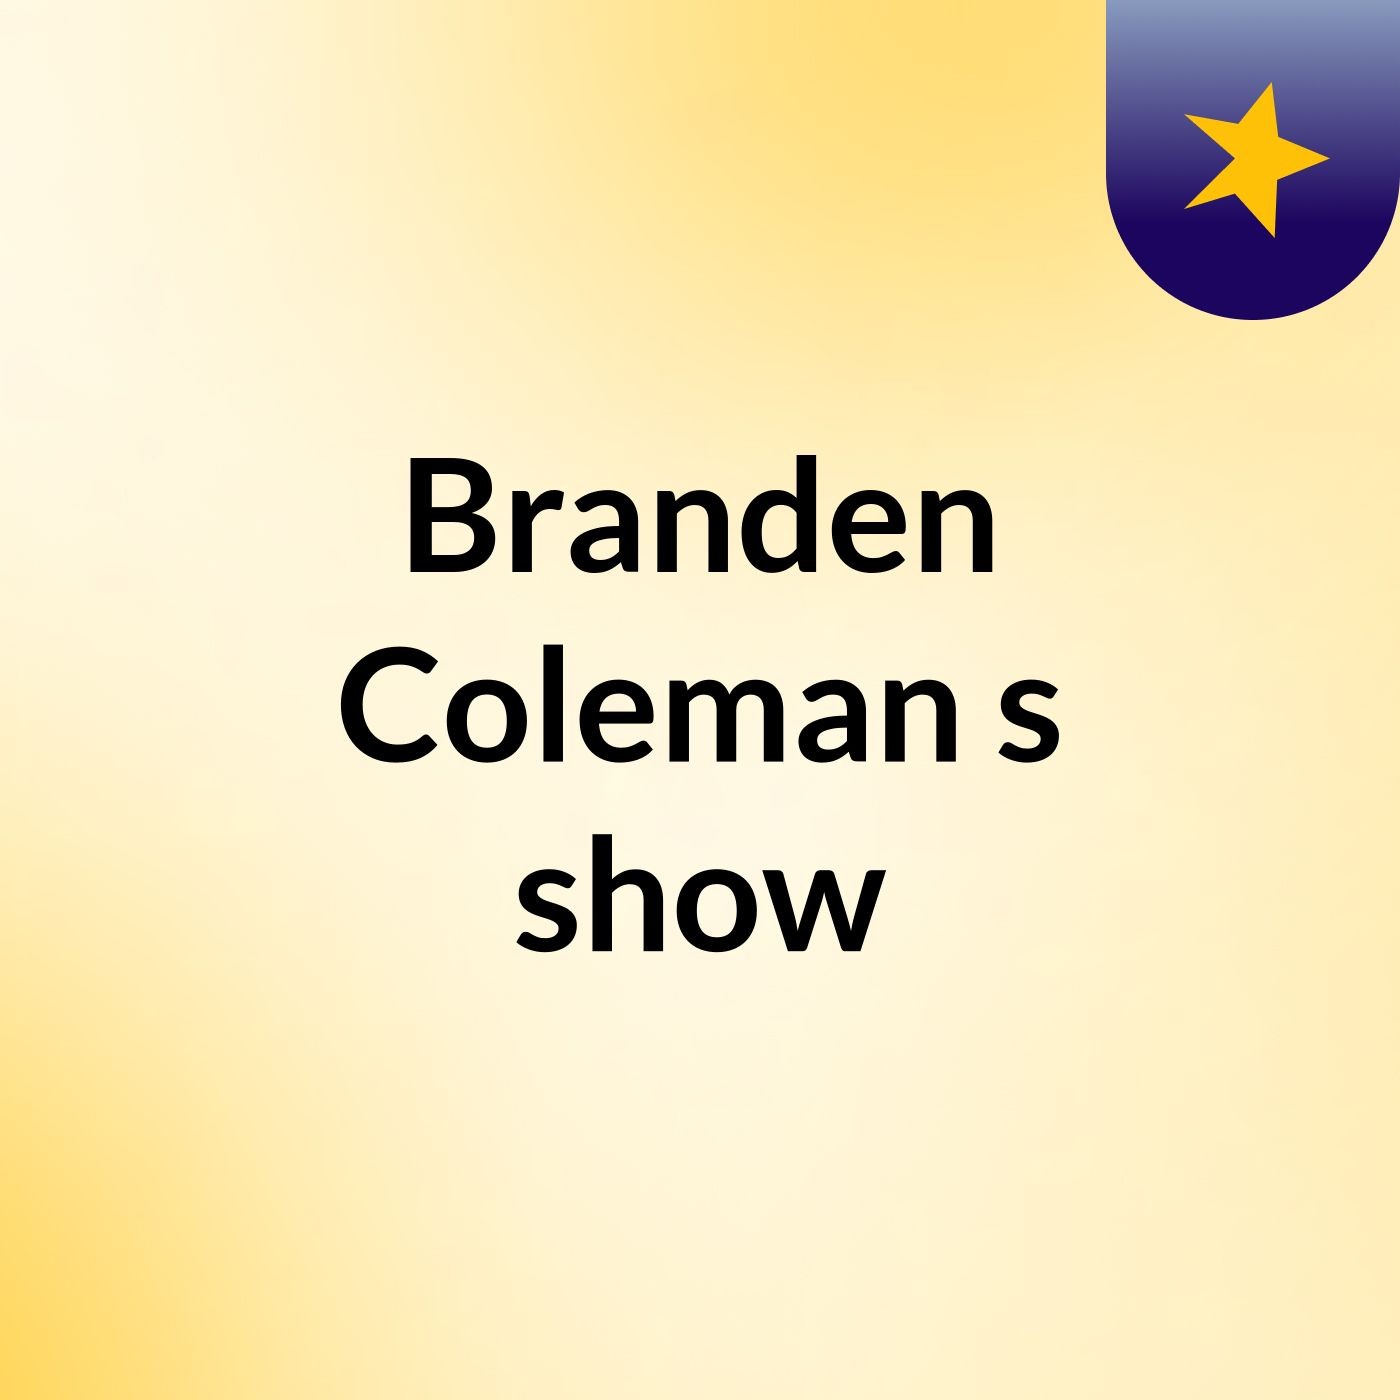 Branden Coleman's show